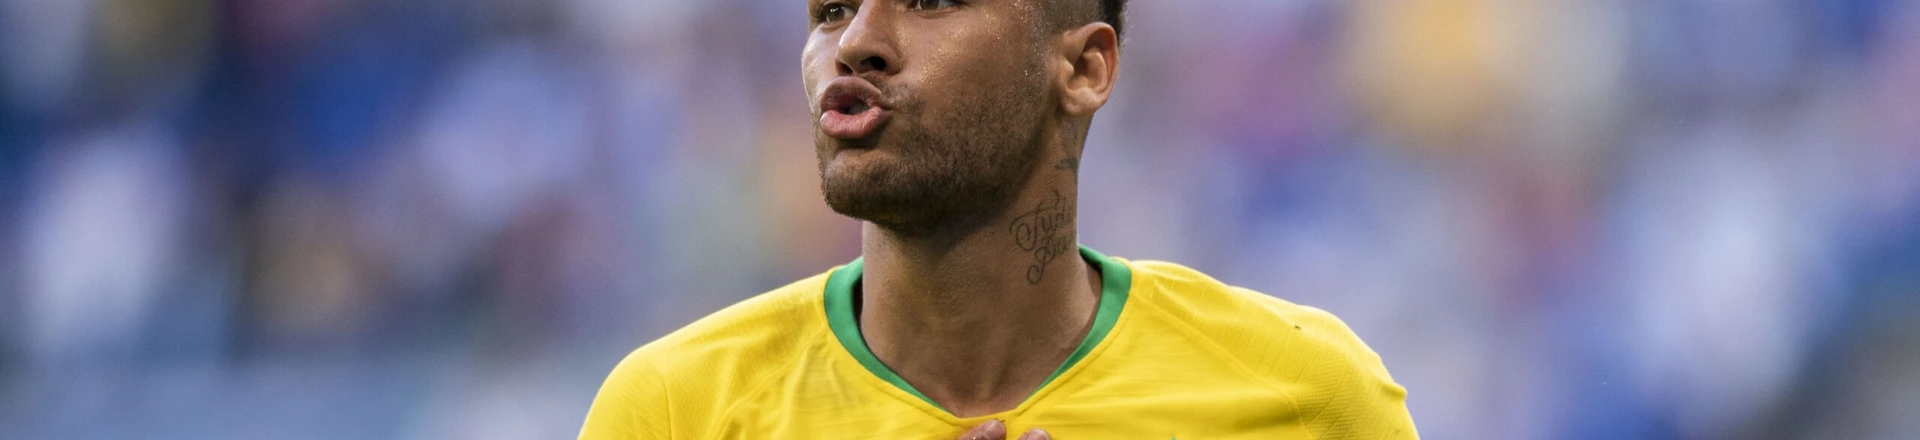 Foram as críticas, e não o puxa-saquismo, que ajudaram Neymar a melhorar na Copa